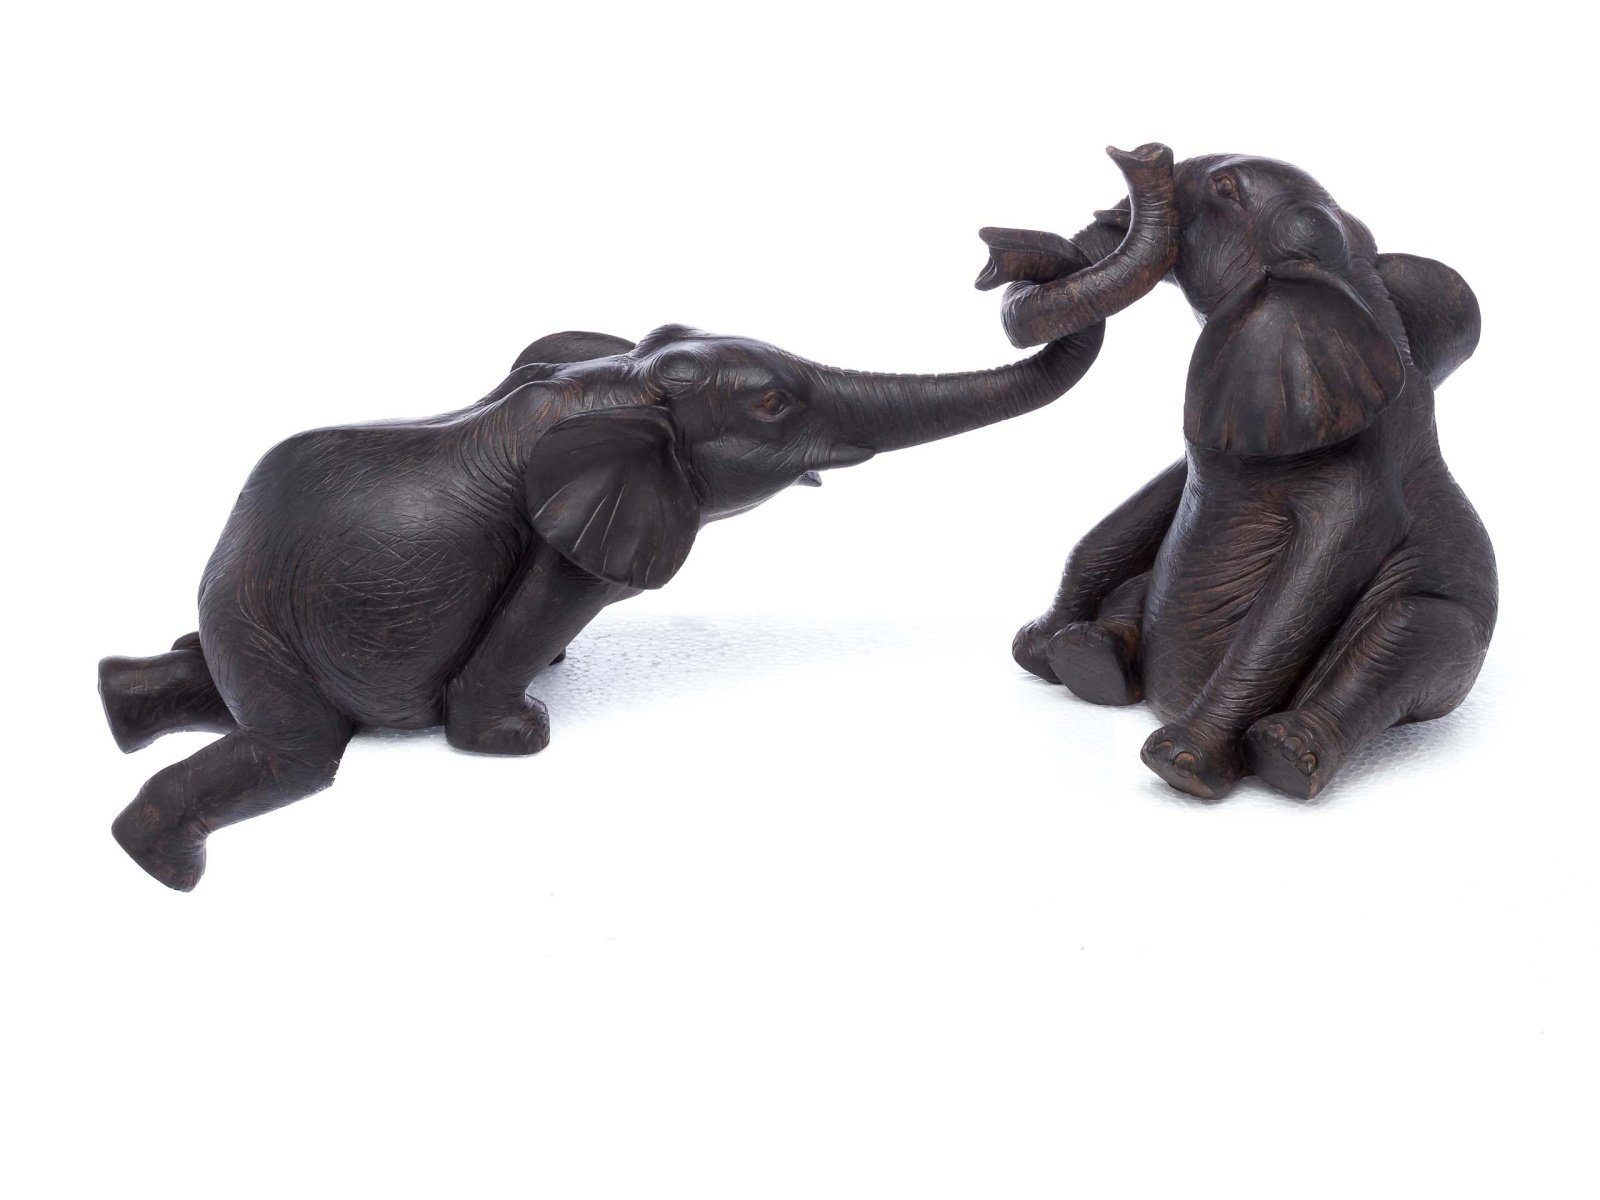 Aubaho Dekofigur Elefantenpaar aus Kunstharz Elefant Figur Skulptur sculpture elephant